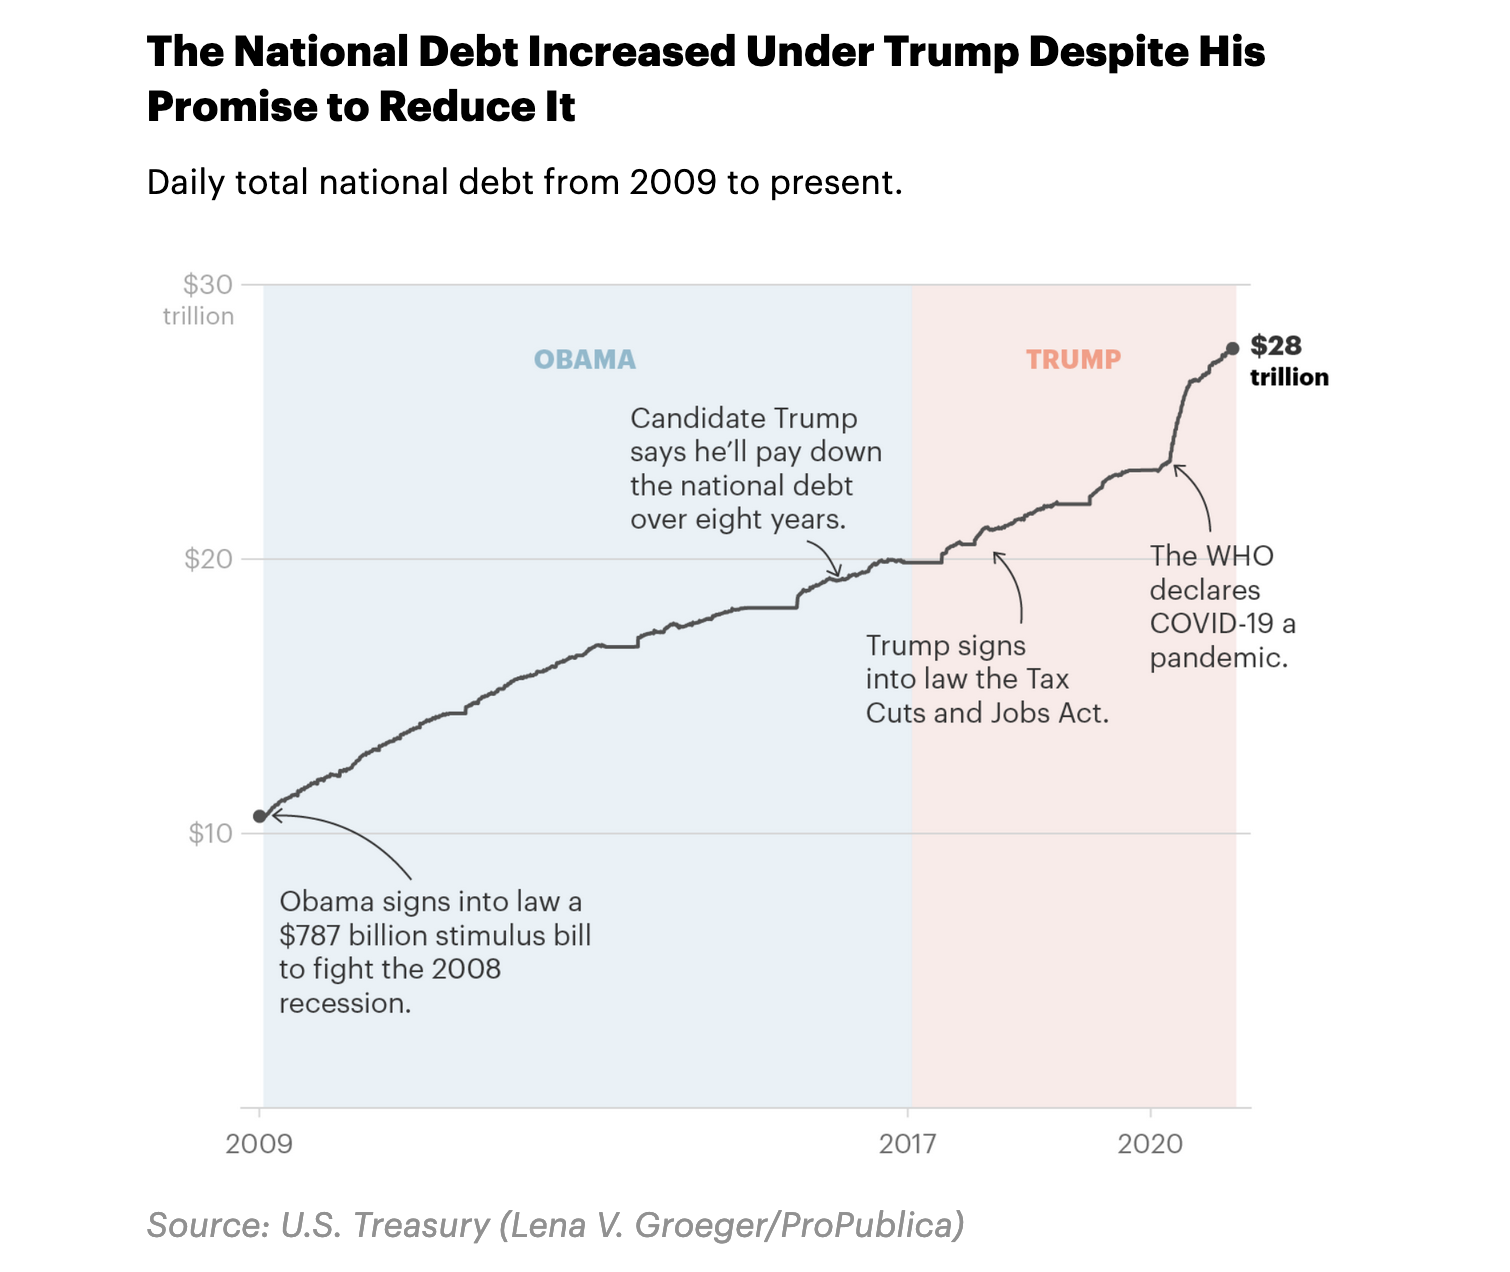 Trump deficits